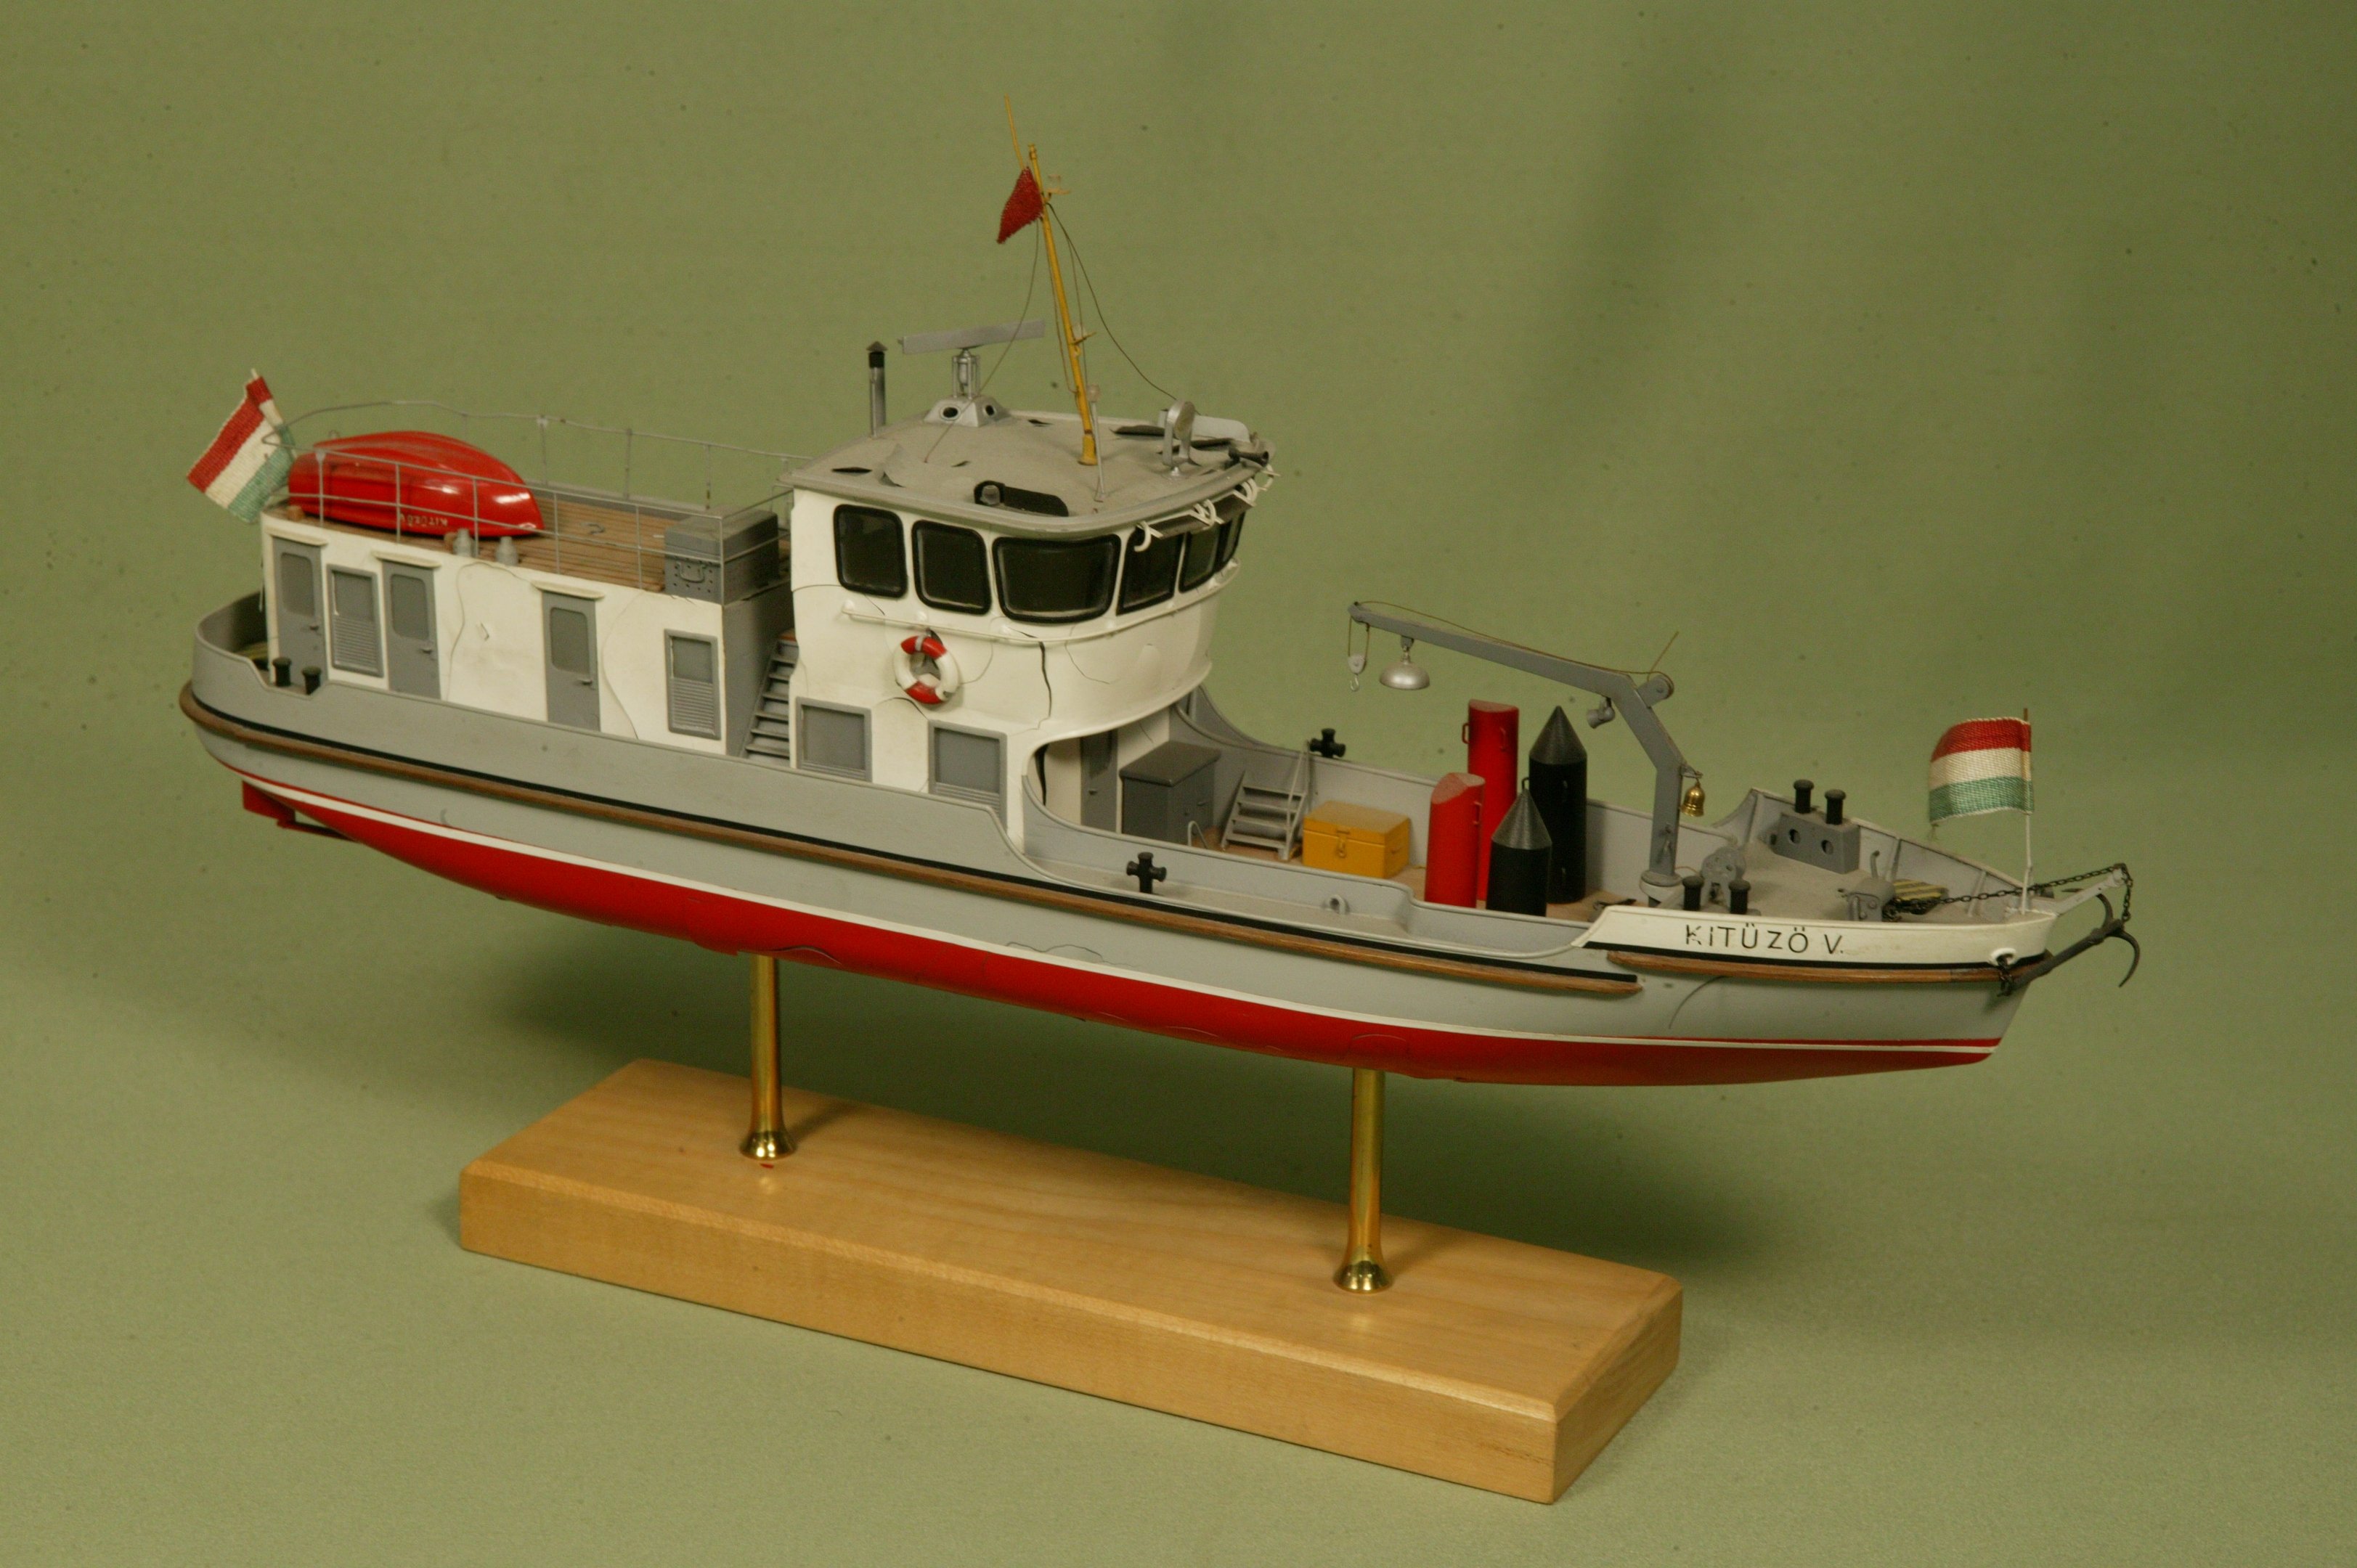 Kitűző V. hajómodell (Magyar Környezetvédelmi és Vízügyi Múzeum - Duna Múzeum CC BY-NC-SA)